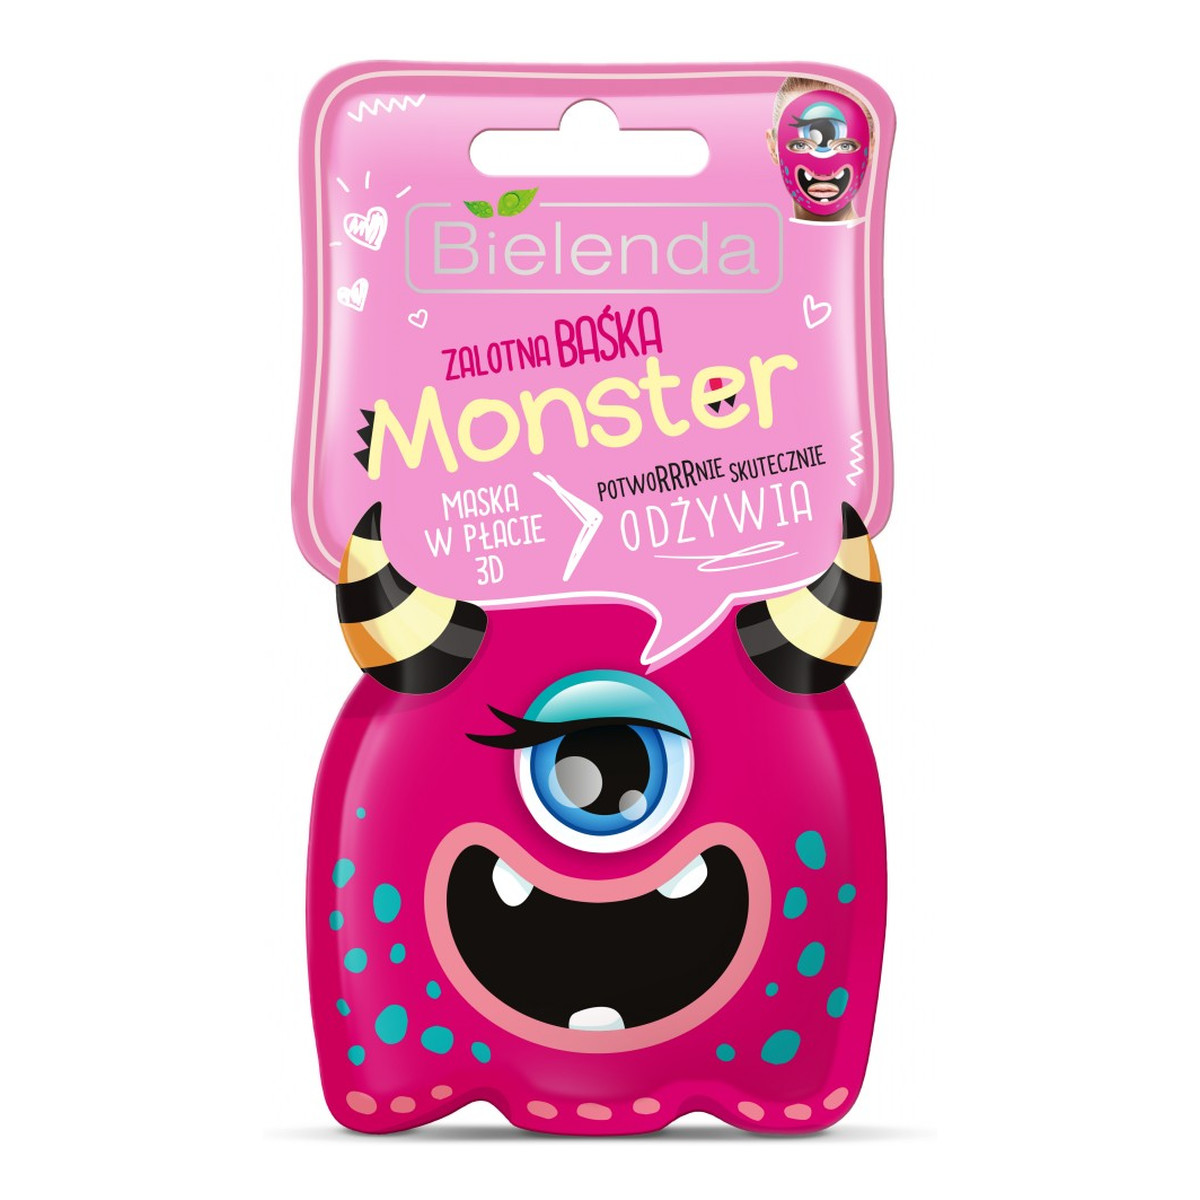 Bielenda Monster Bąbelkująca MASECZKA rozświetlająca Odżywcza Zalotna Baśka 6g